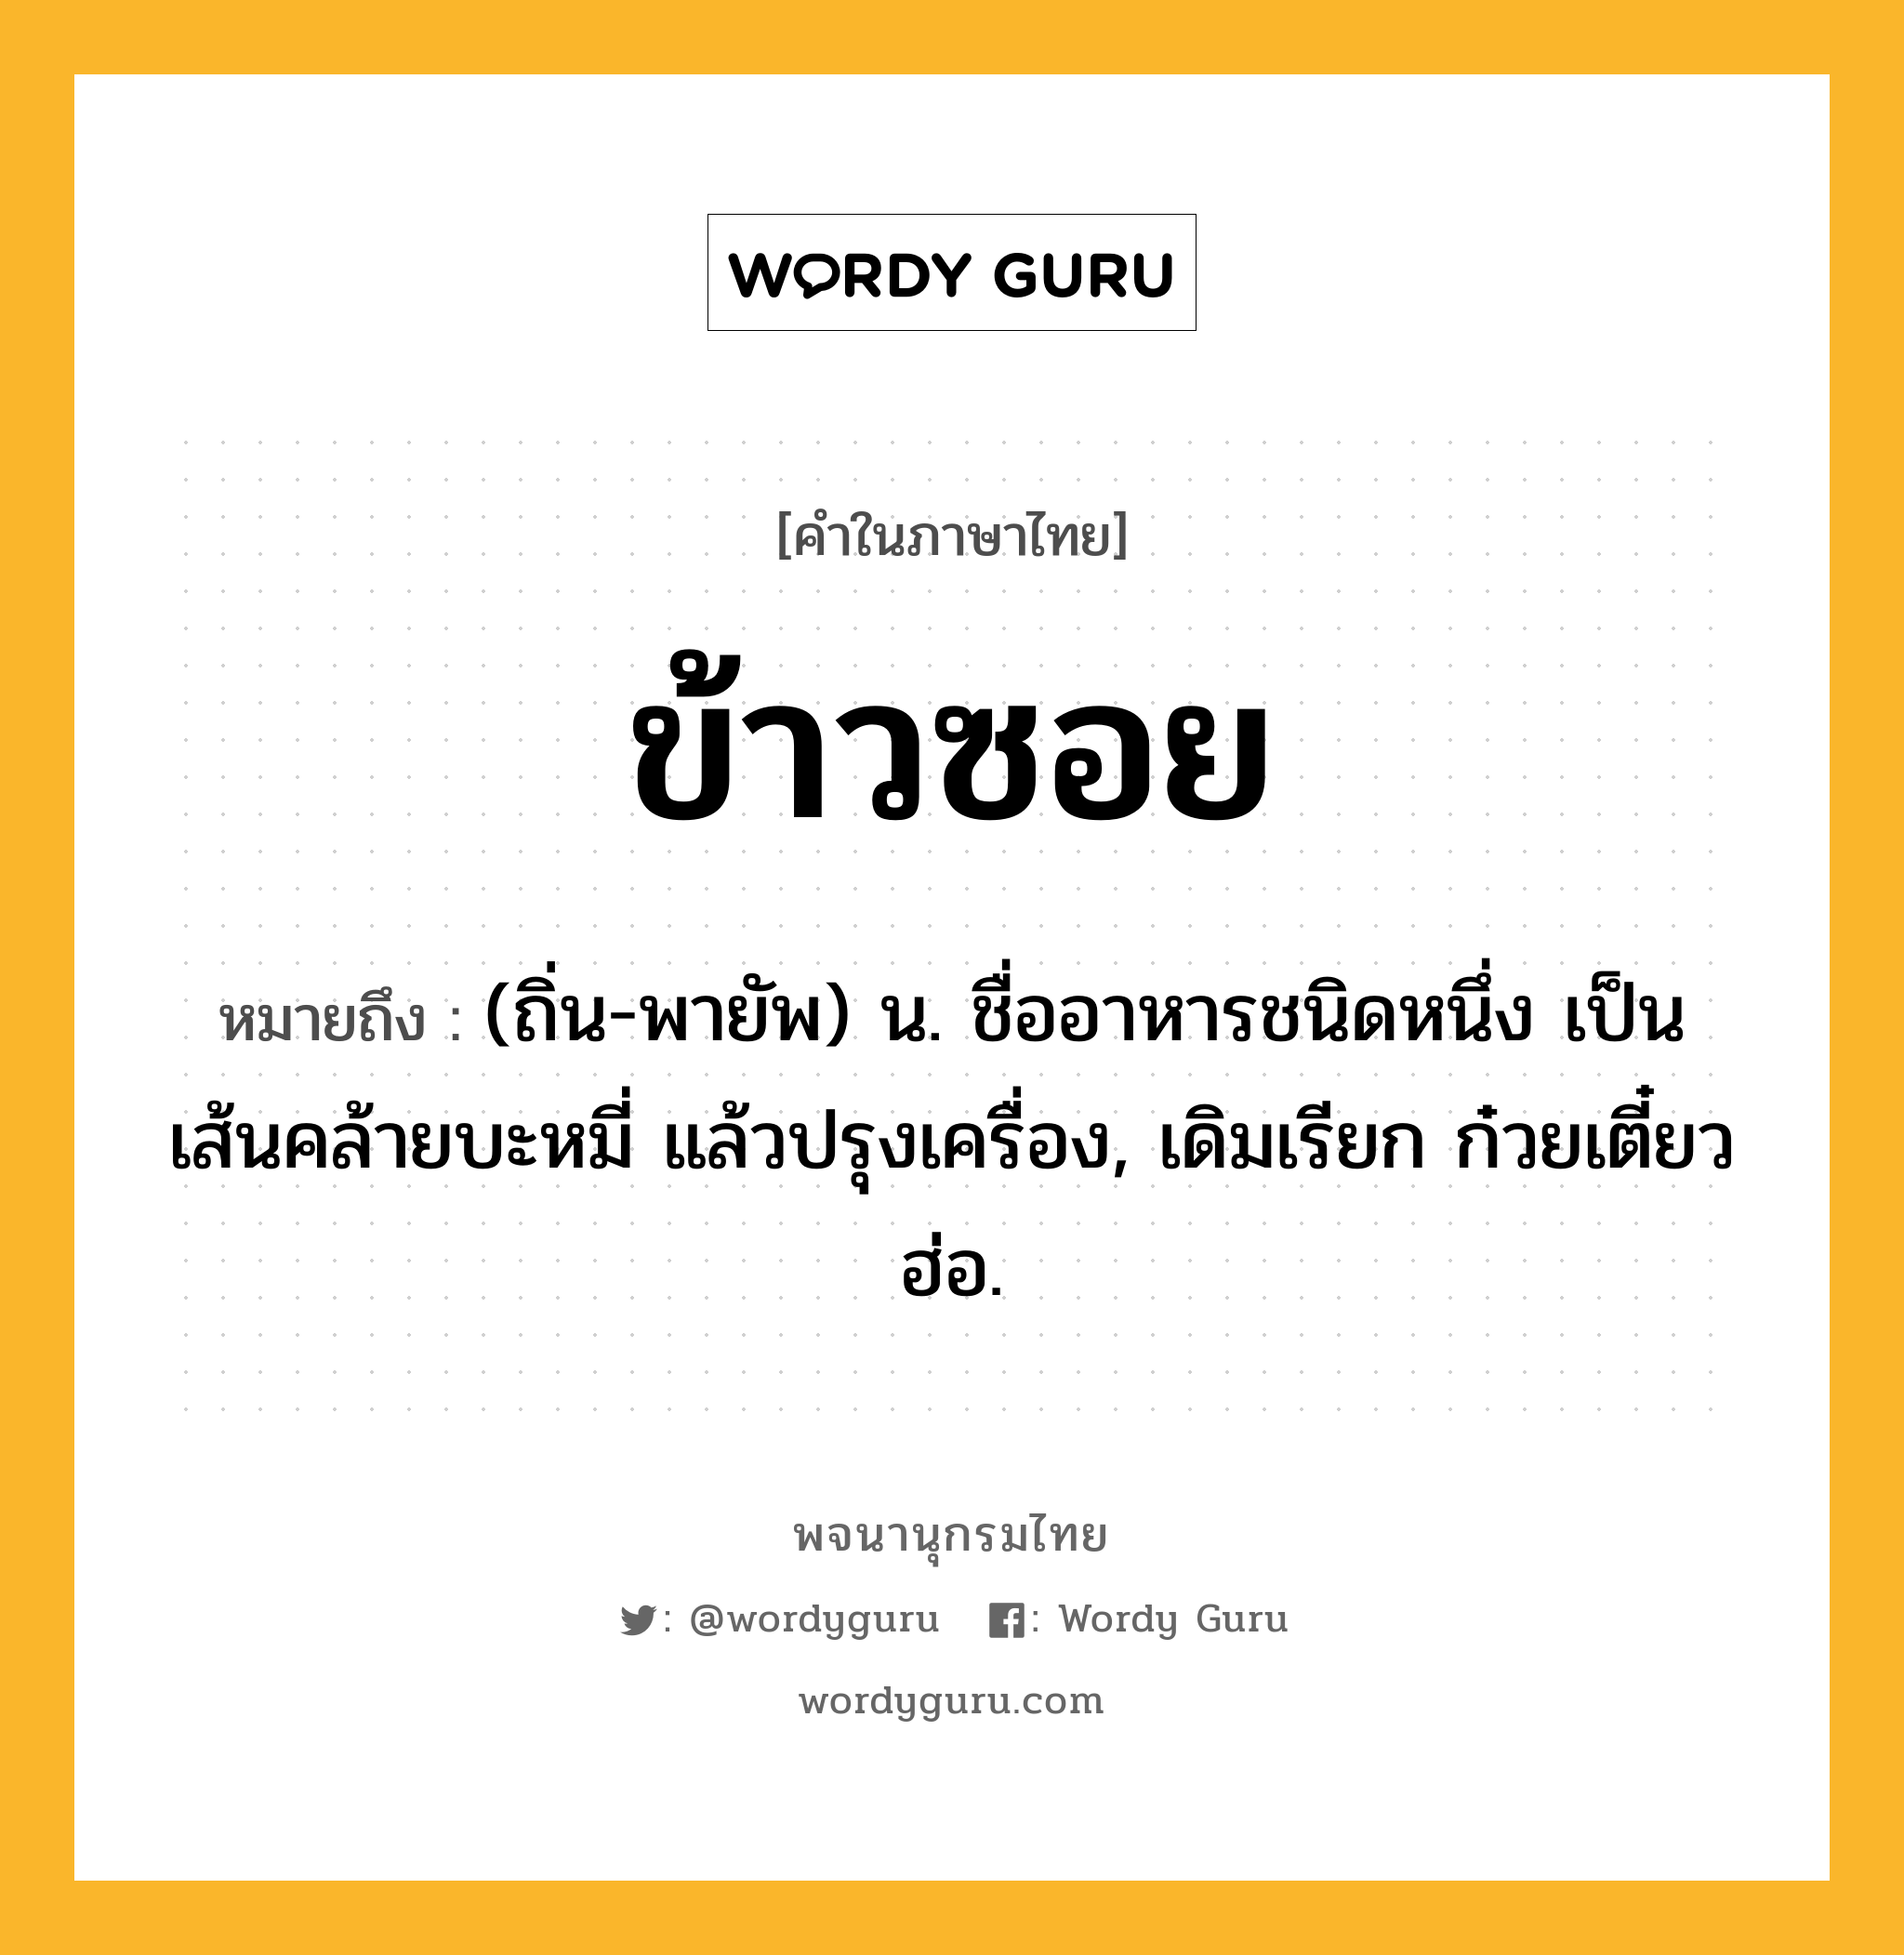 ข้าวซอย หมายถึงอะไร?, คำในภาษาไทย ข้าวซอย หมายถึง (ถิ่น-พายัพ) น. ชื่ออาหารชนิดหนึ่ง เป็นเส้นคล้ายบะหมี่ แล้วปรุงเครื่อง, เดิมเรียก ก๋วยเตี๋ยวฮ่อ.